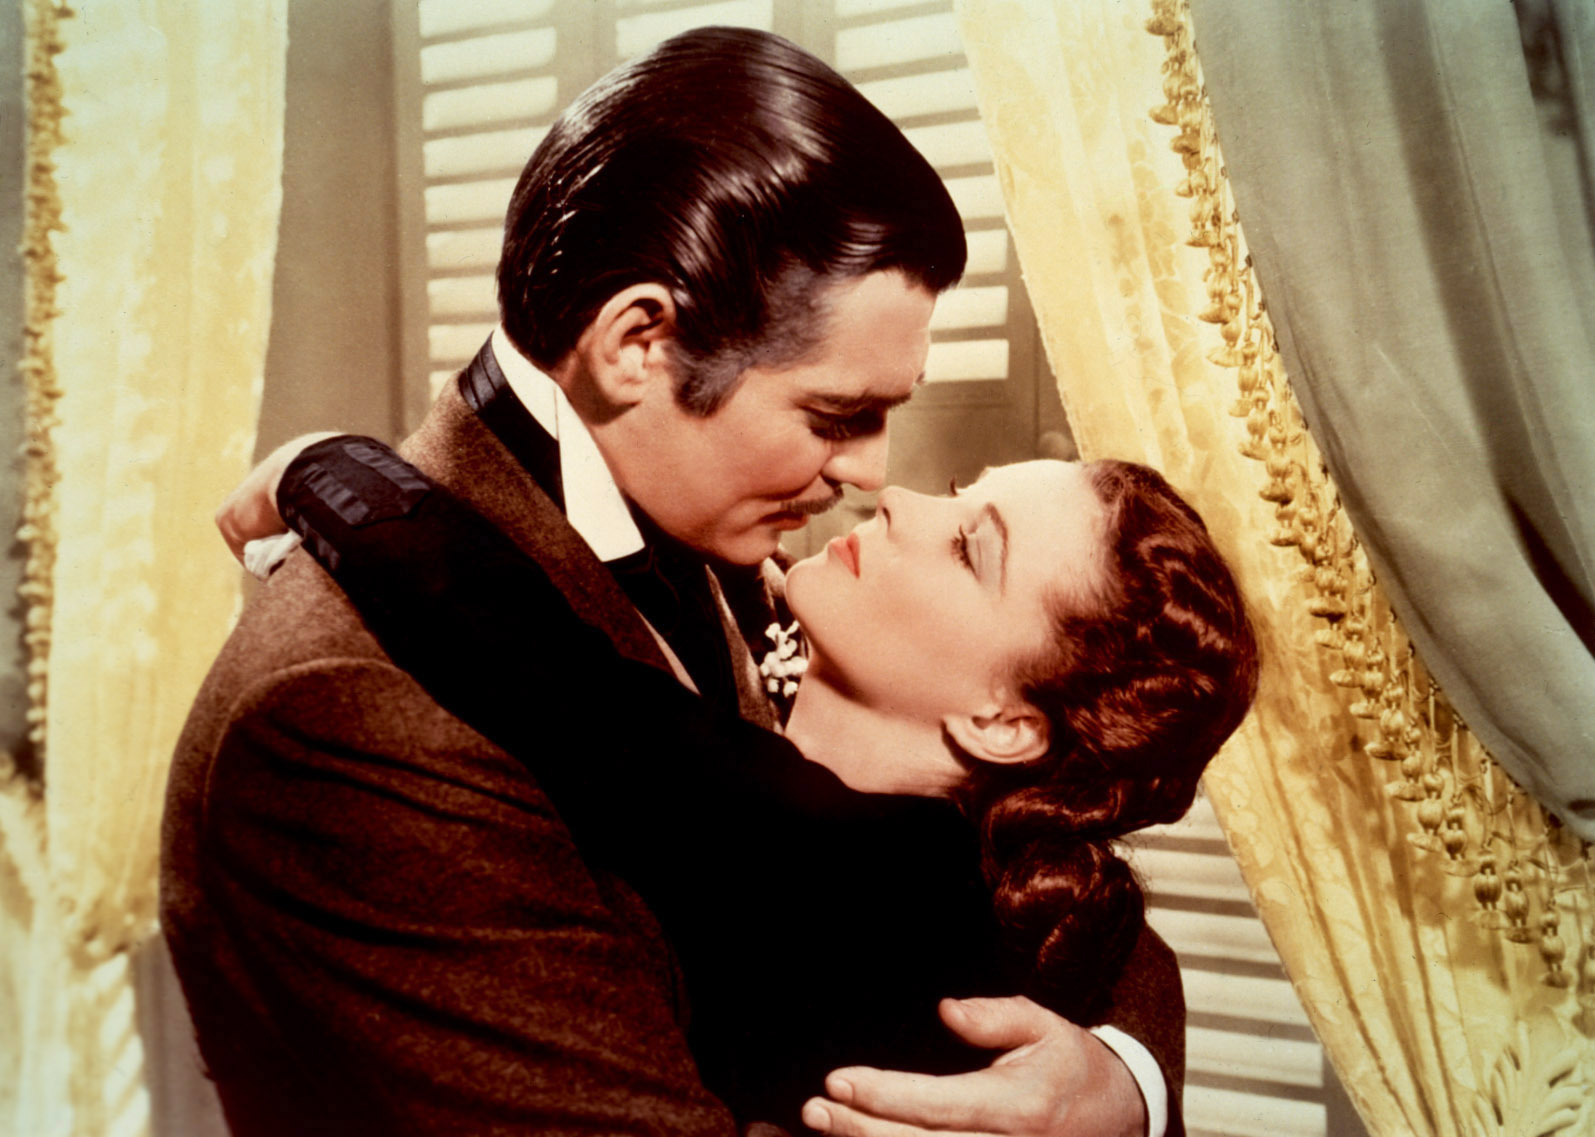 ÐÐ°ÑÑÐ¸Ð½ÐºÐ¸ Ð¿Ð¾ Ð·Ð°Ð¿ÑÐ¾ÑÑ Rhett Butler kisses Scarlett OâHara in Gone With The Wind and says "You need kissing badly"